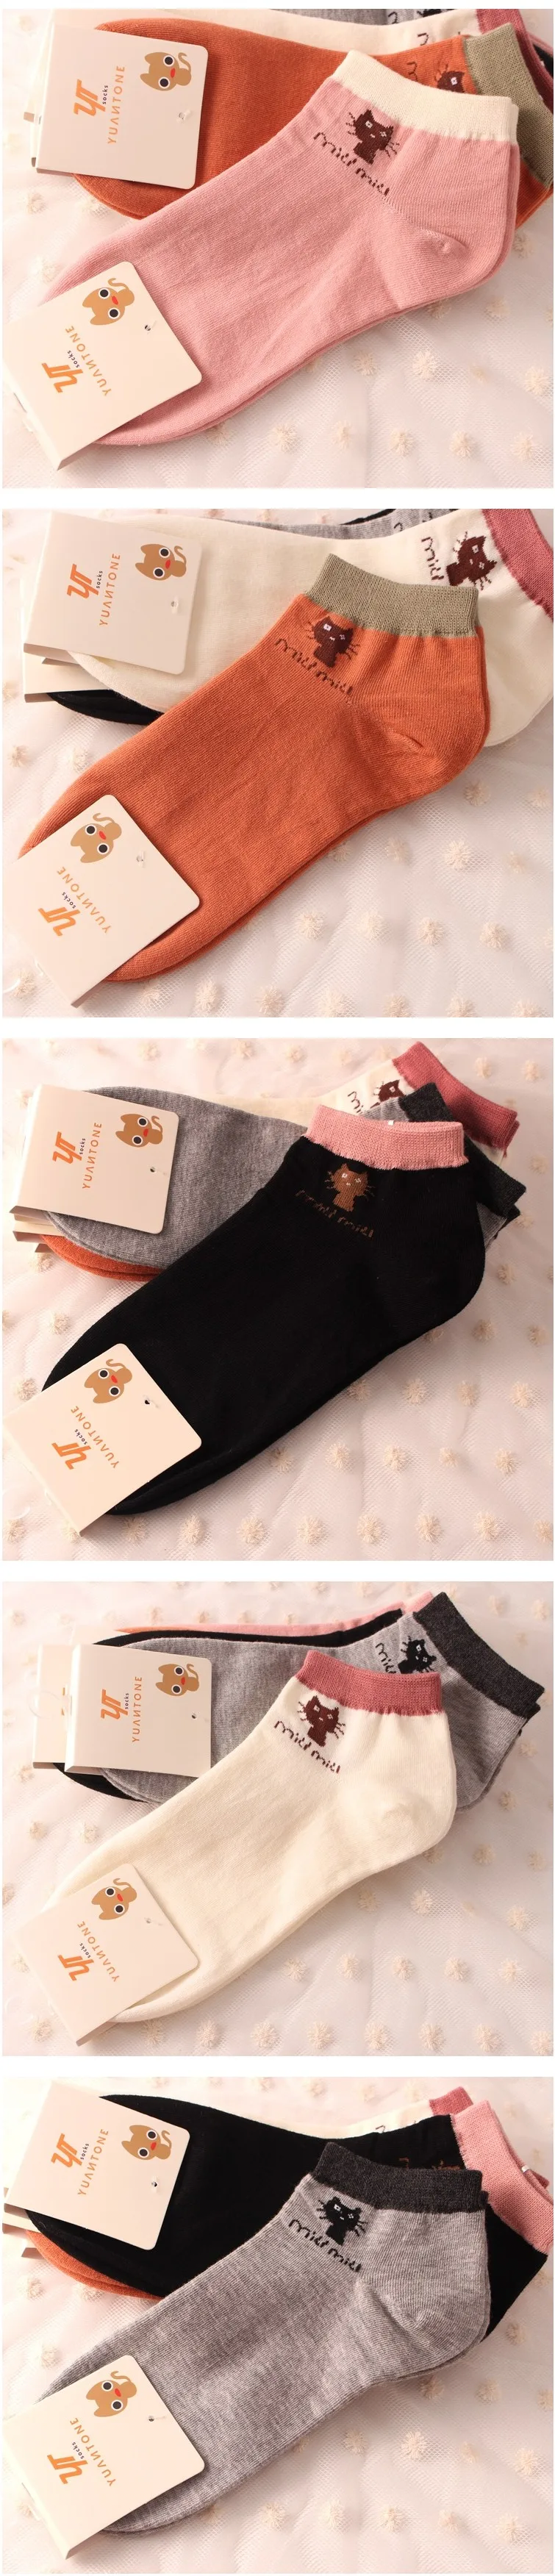 Хлопковые носки лодочкой для женщин с милым узоров в виде мультяшного кота, для весны и лета, модные, носки по щиколотку для женщин, короткие носки, 5 пар/набор